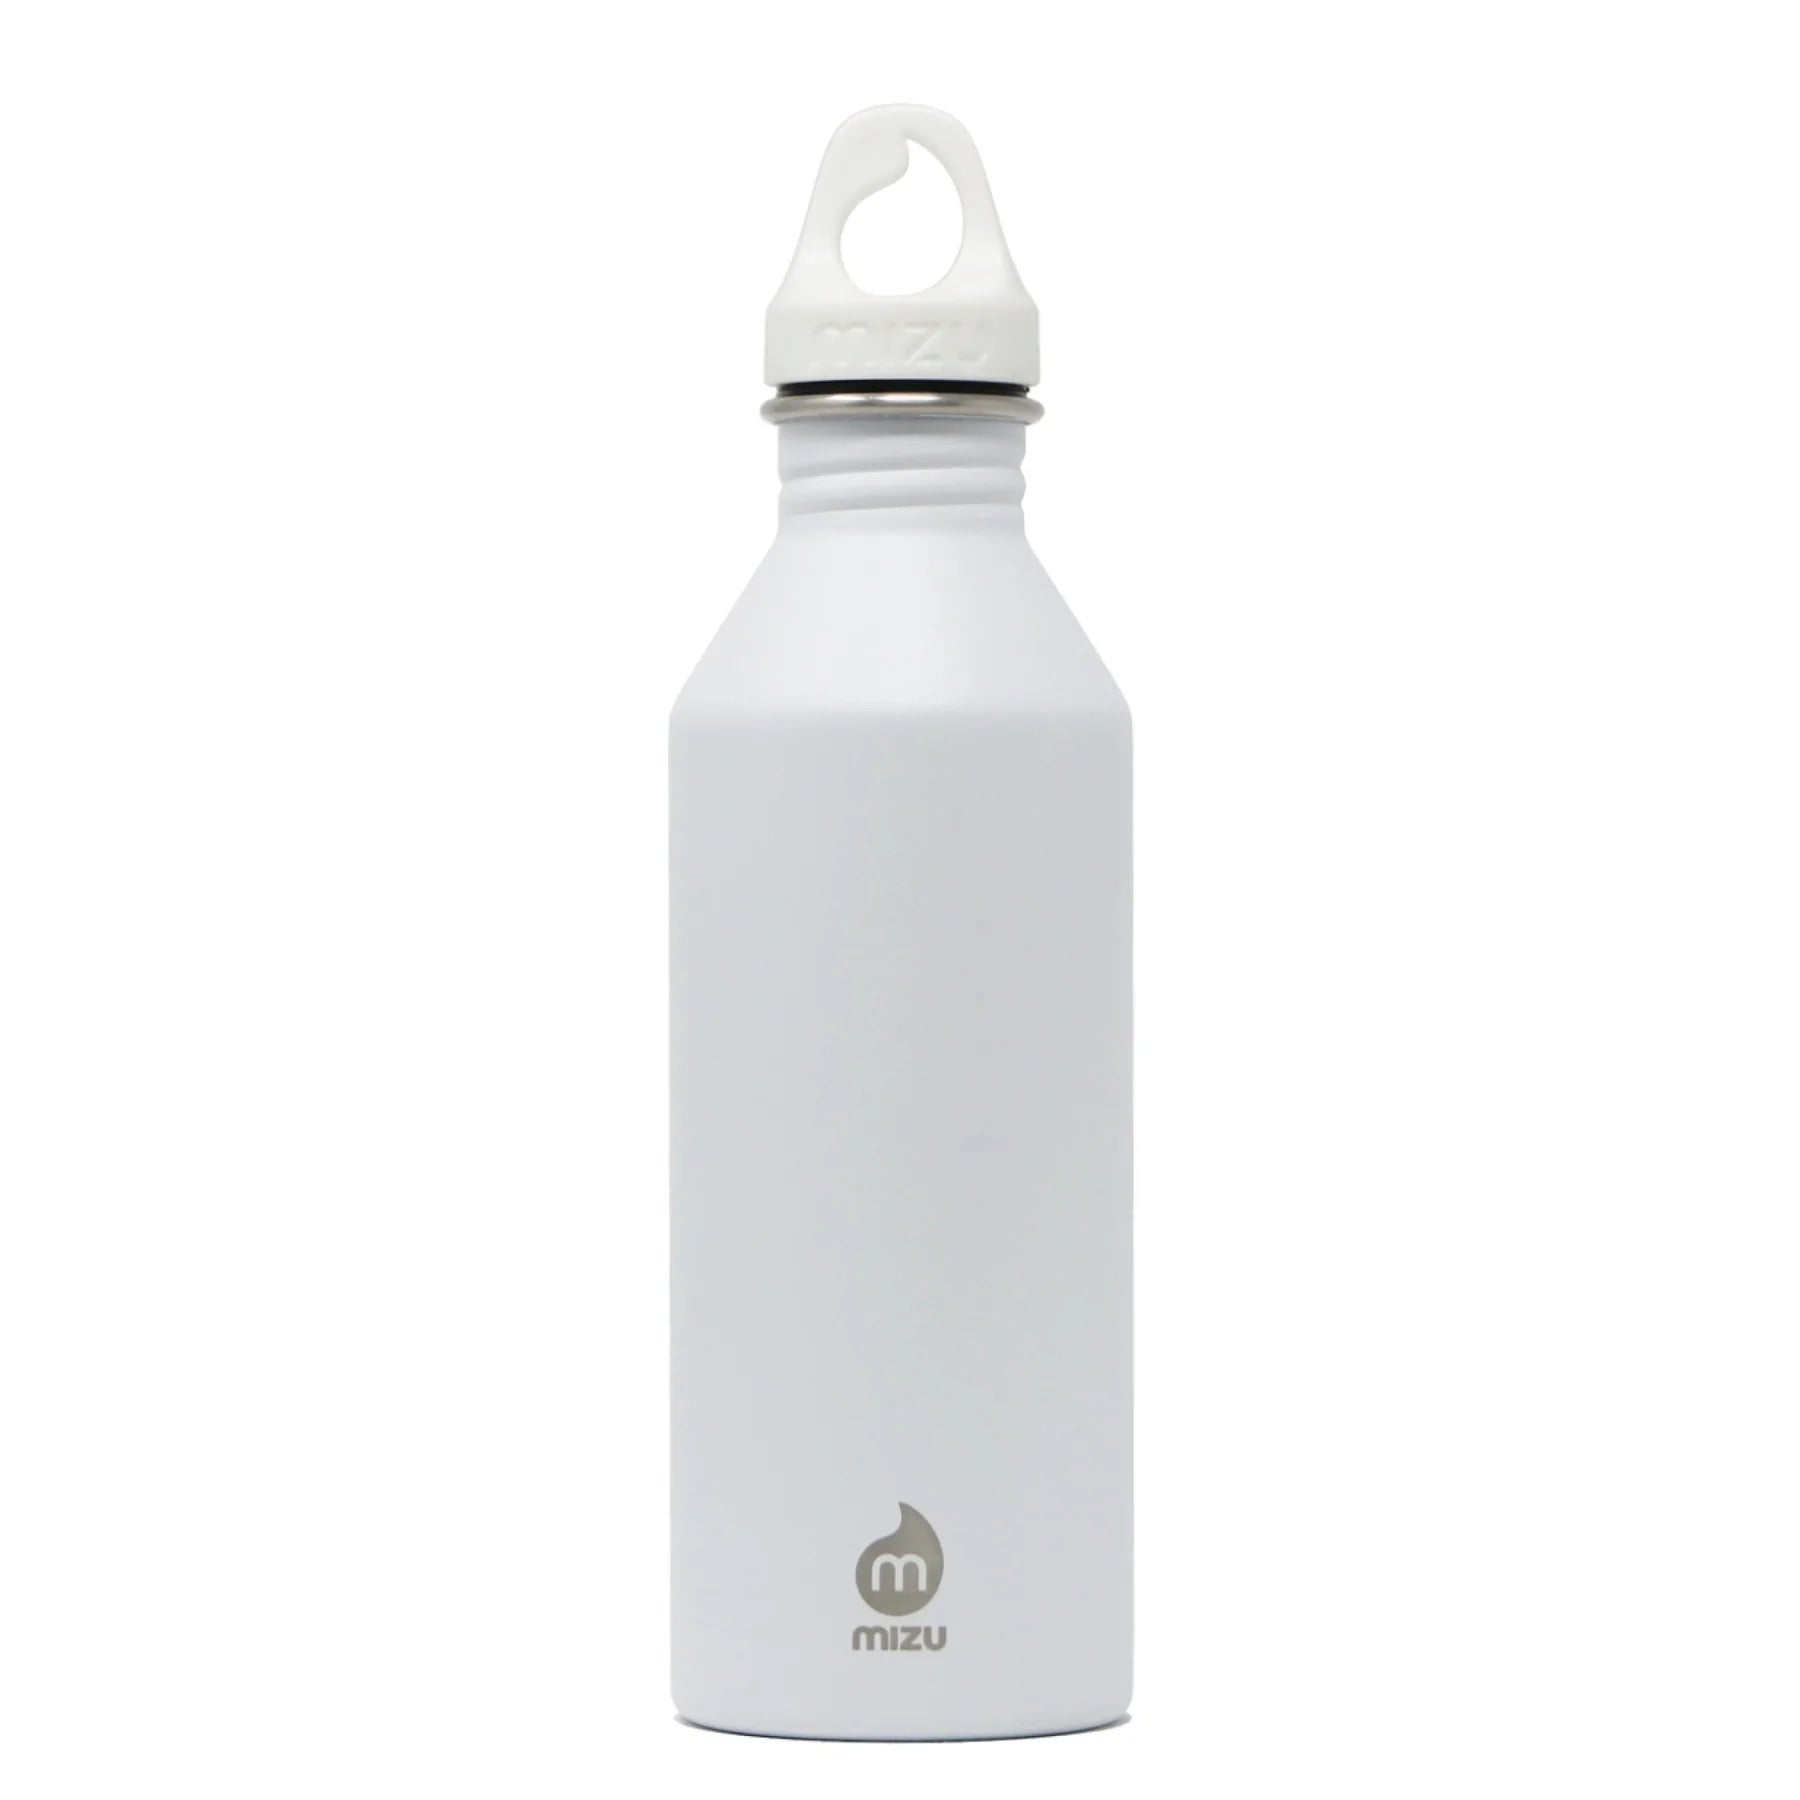 Mizu - M8 bottle (750ml)